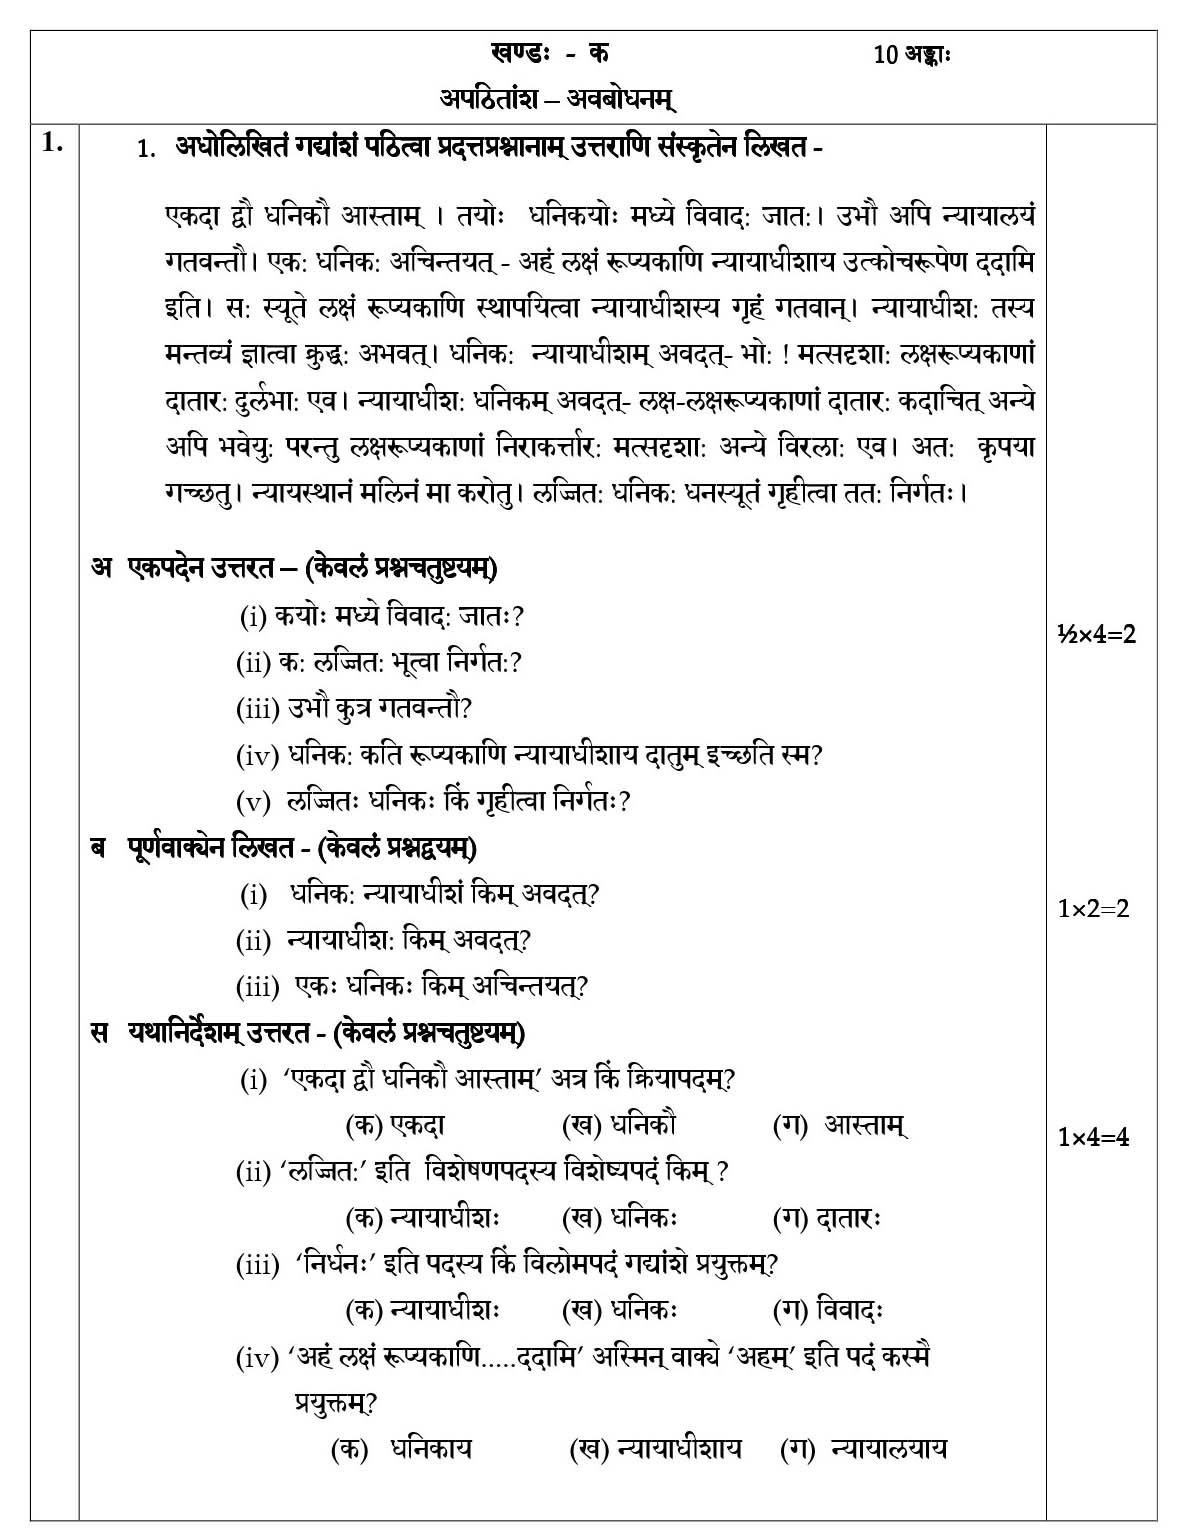 Sanskrit CBSE Class X Sample Question Paper 2018-19 - Image 2